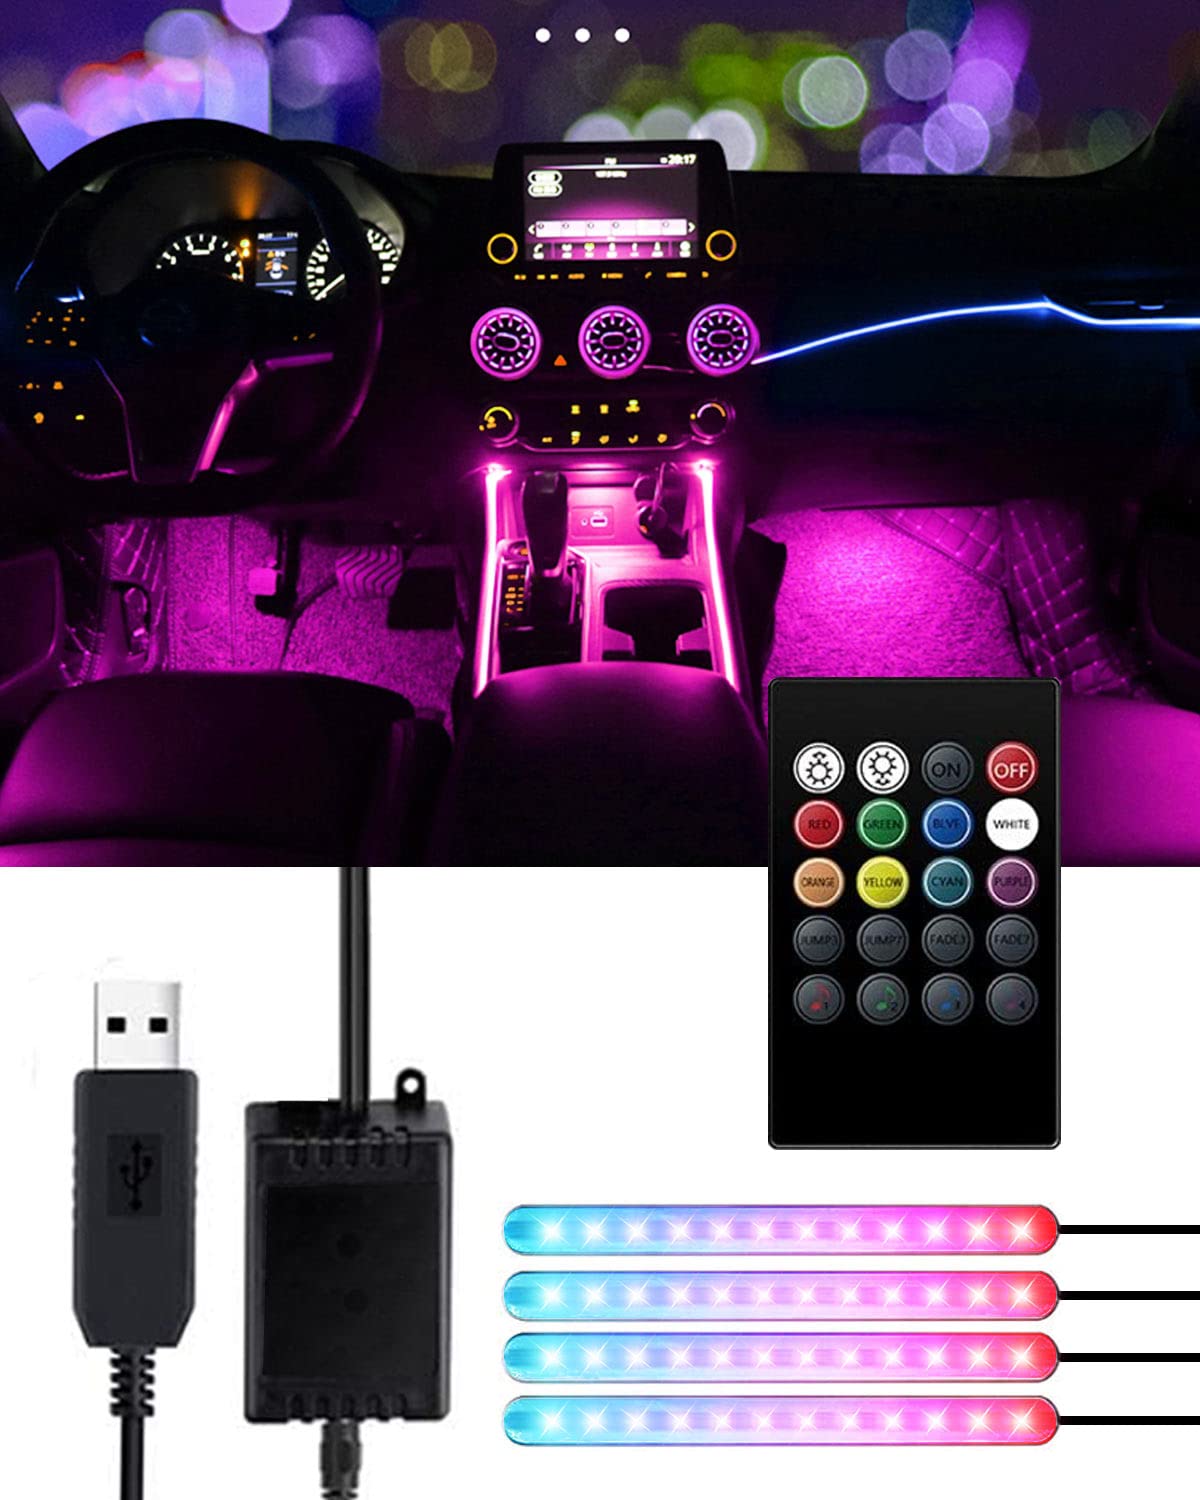 Trongle Auto Streifen LED-Lichter, Auto-Innenbeleuchtung wasserdicht mit 4 x 48 LEDs, 8 Farben mit Soundsensor und Fernbedienung, USB-Port, Auto-Musik-Sound-aktivierte Beleuchtung, DC 5 V von Trongle